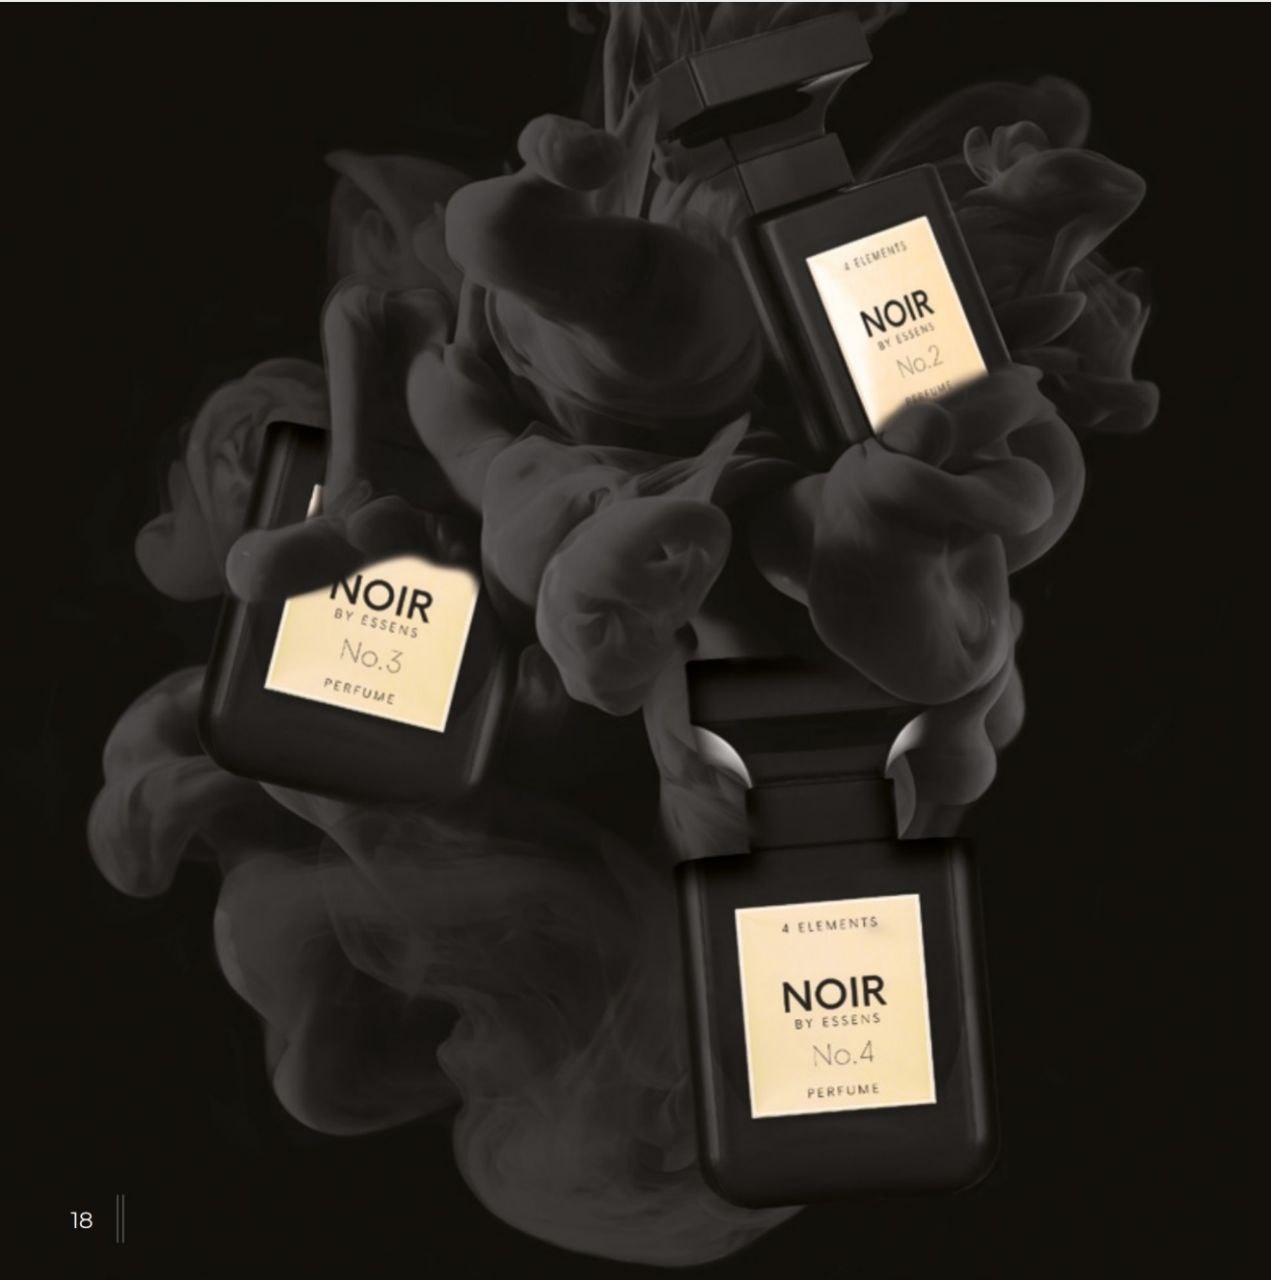 Том форд эссенс. Noir 01 Эссенс. Духи Noir от Essens - №2. Noir духи Эссенс 1. Эссенс 4 элемента духи.